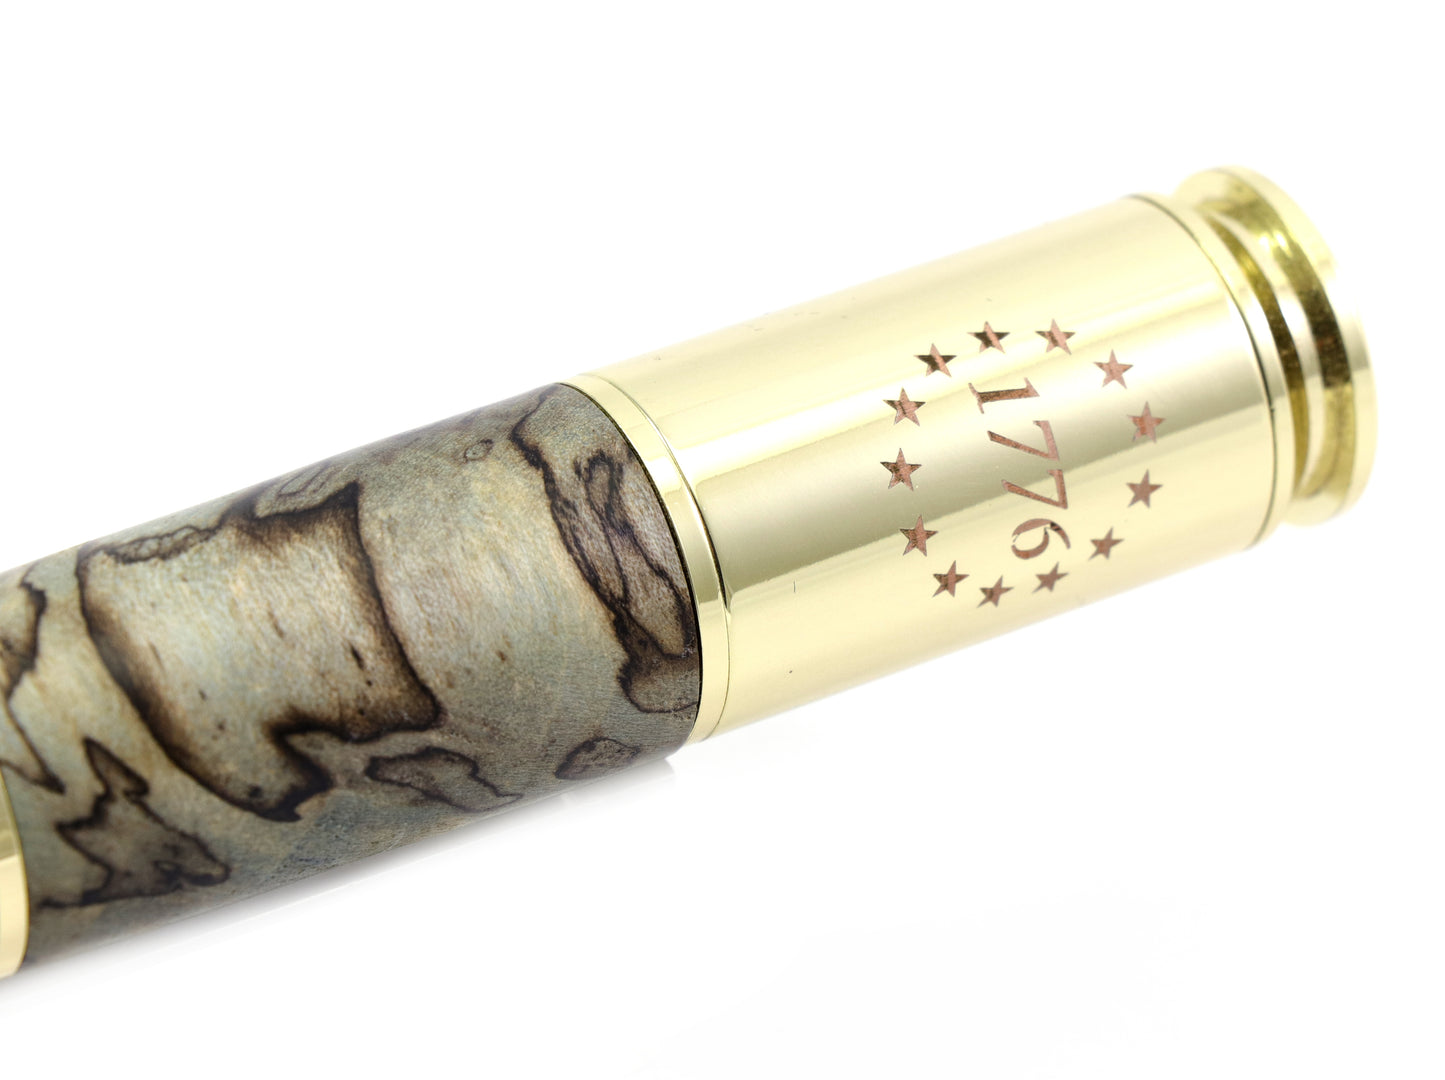 Spalted Wood Large Bolt Action Bullet Pen